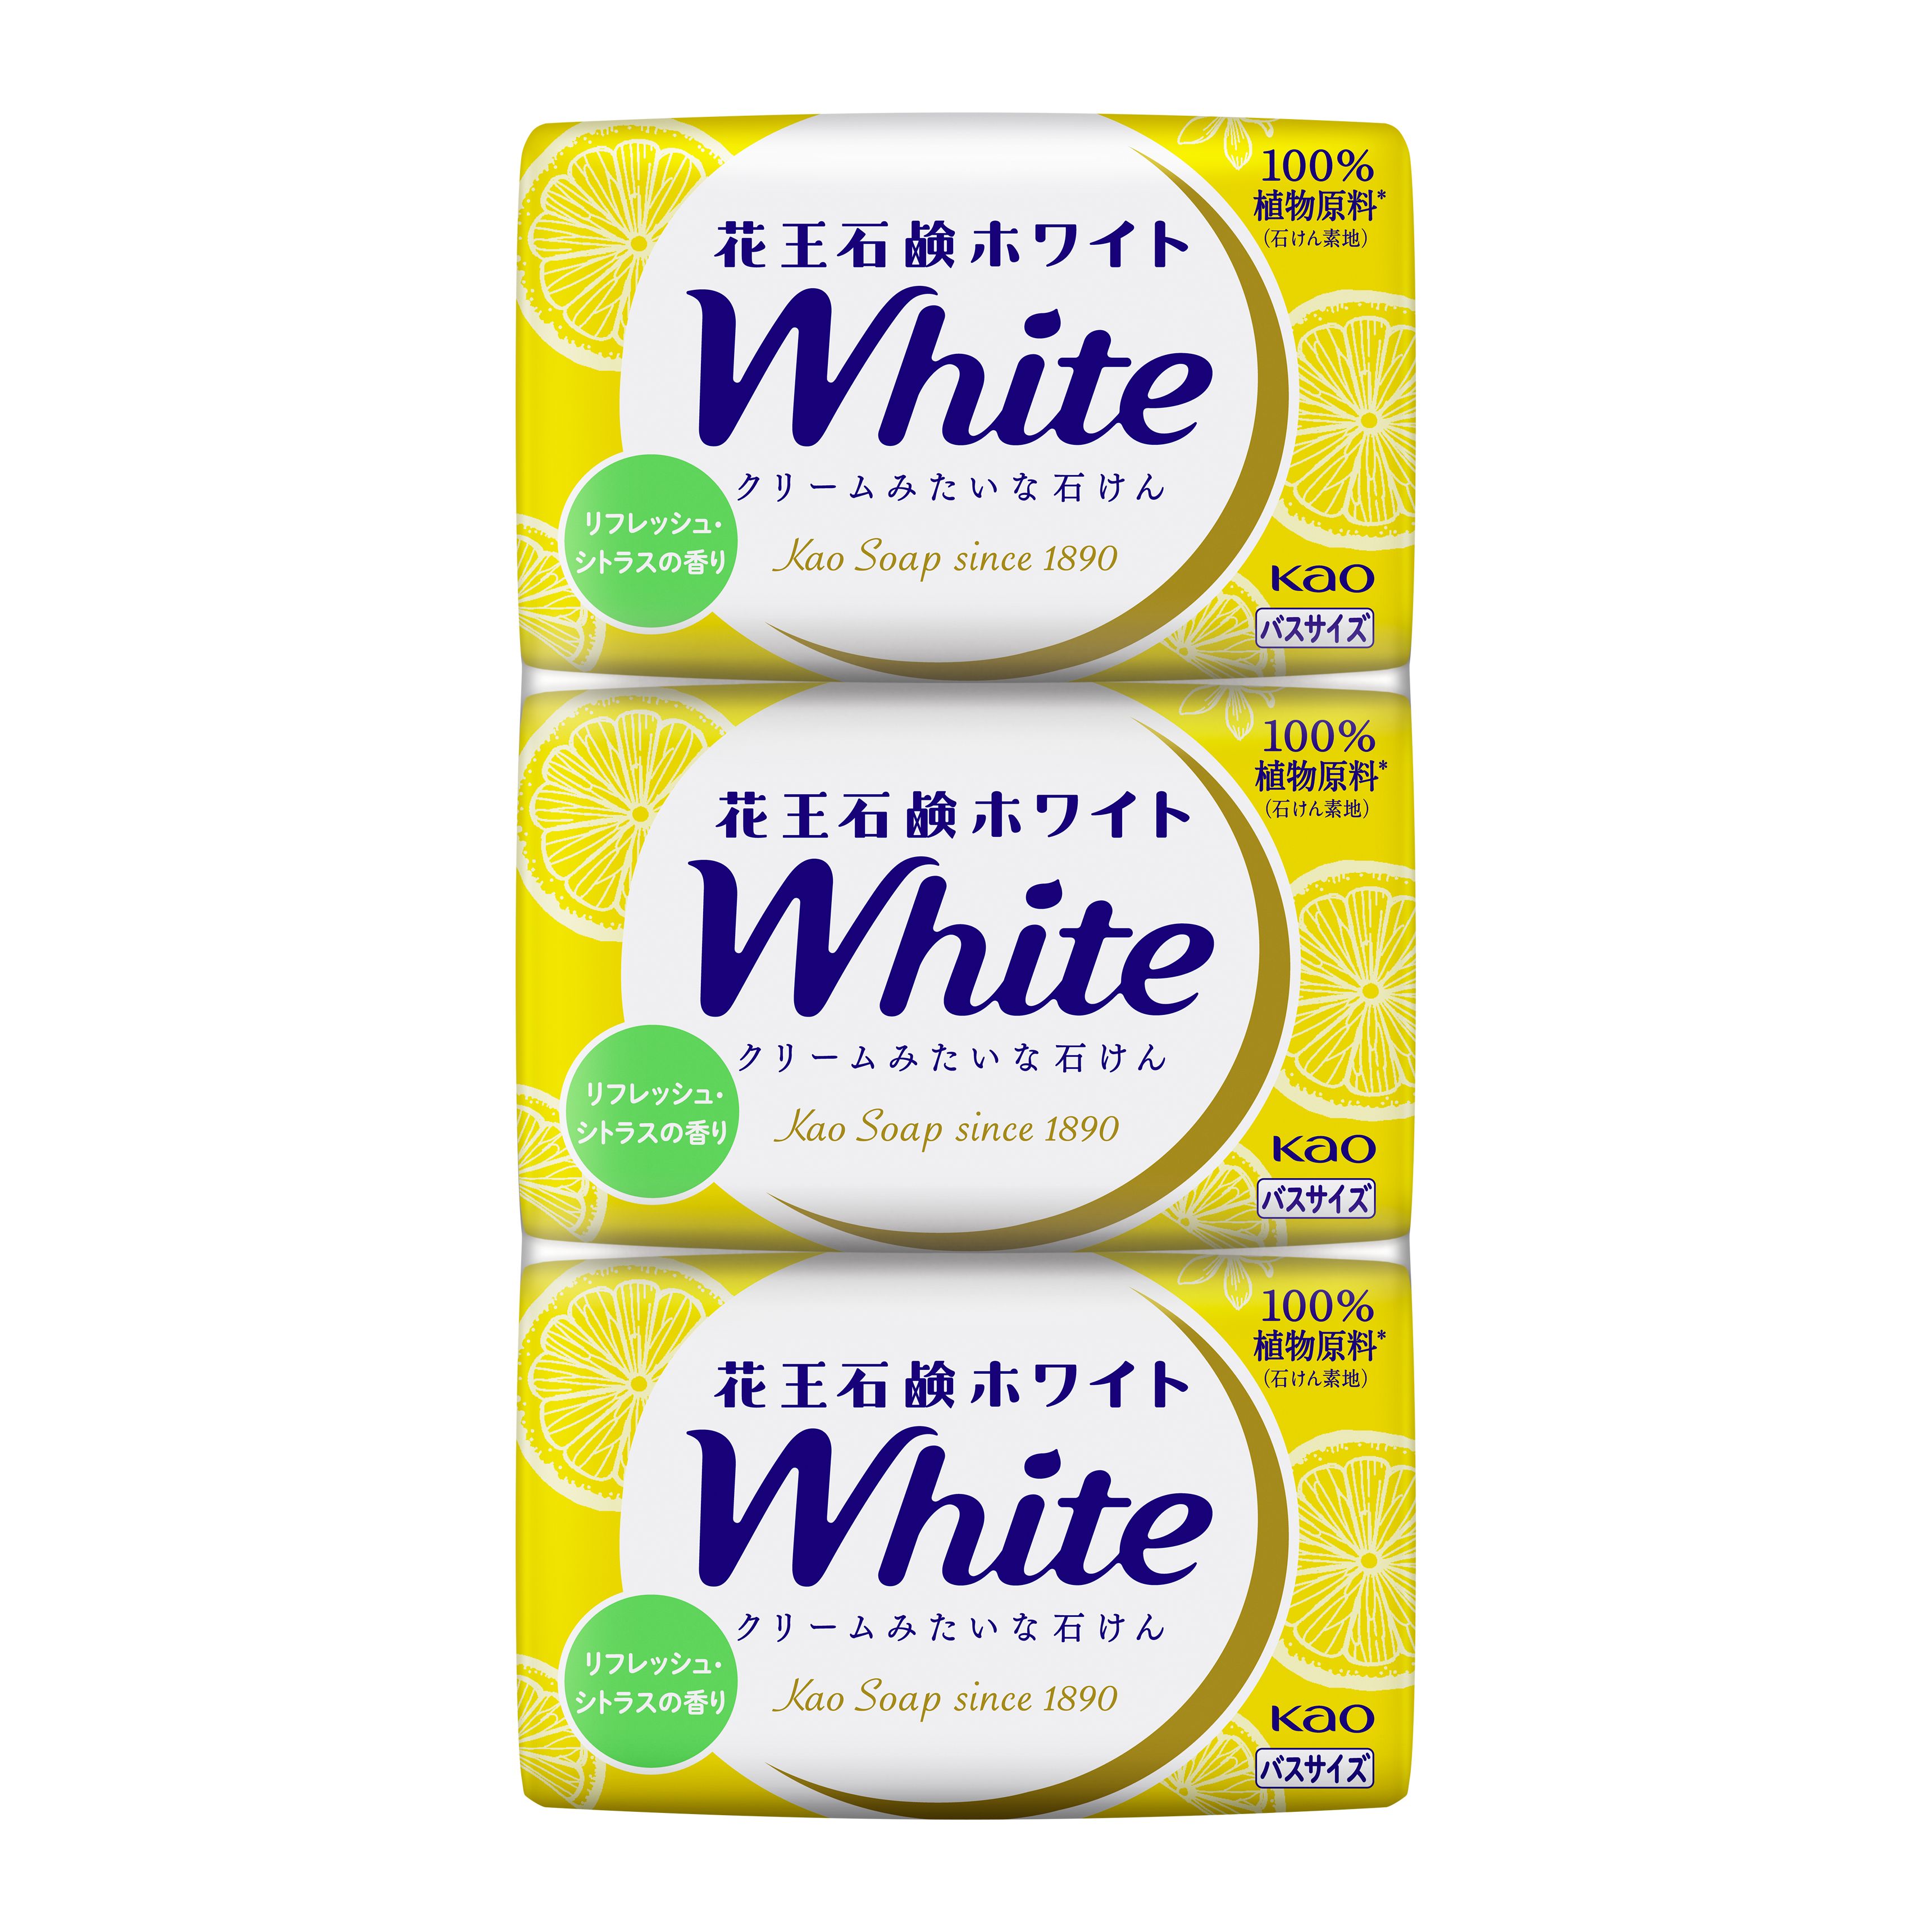 花王石鹸 ホワイト アロマティック・ローズの香り 普通サイズ 6